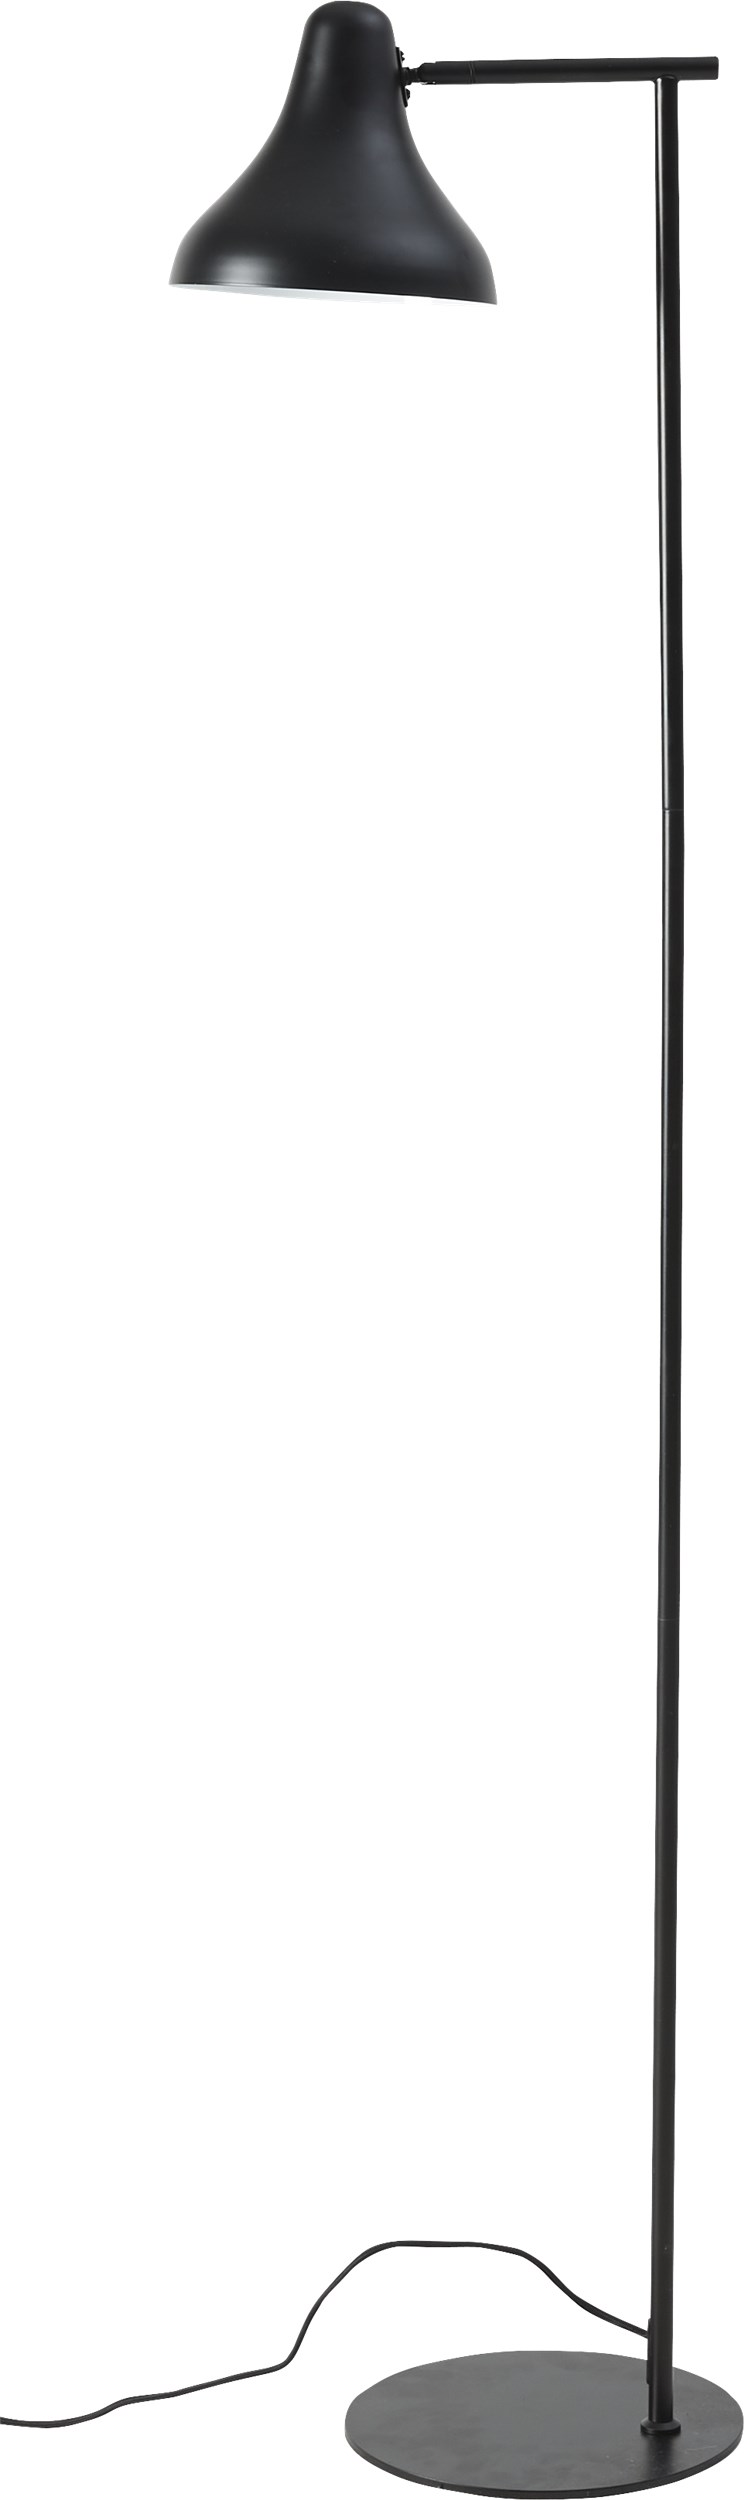 Arden Gulvlampe 155 x 25 cm - Skærm i sort metal og sort metal base